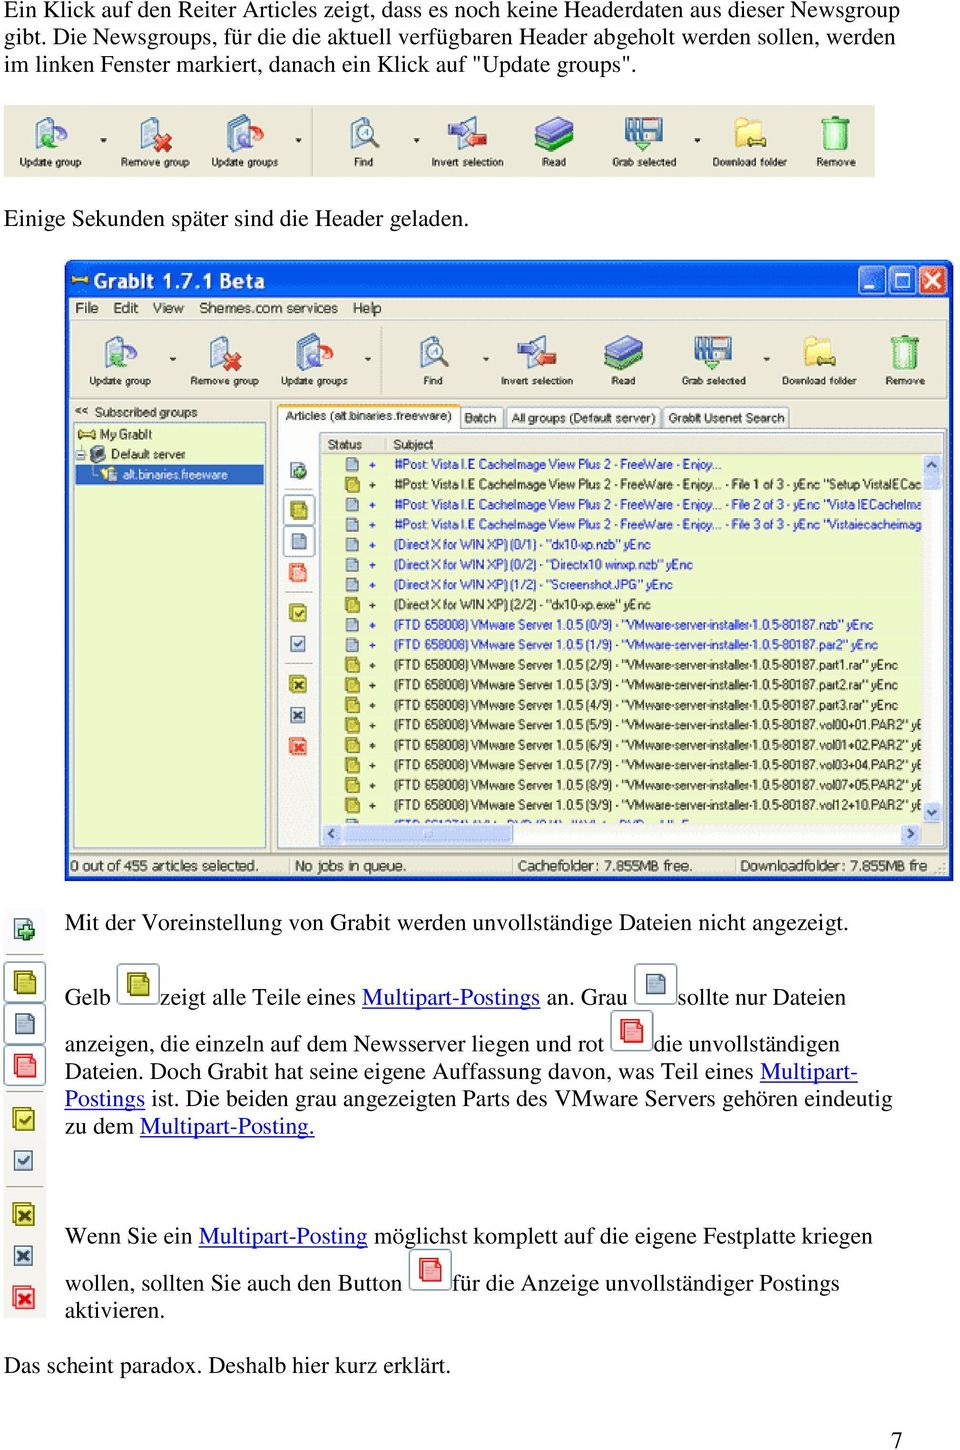 Mit der Voreinstellung von Grabit werden unvollständige Dateien nicht angezeigt. Gelb zeigt alle Teile eines Multipart-Postings an.